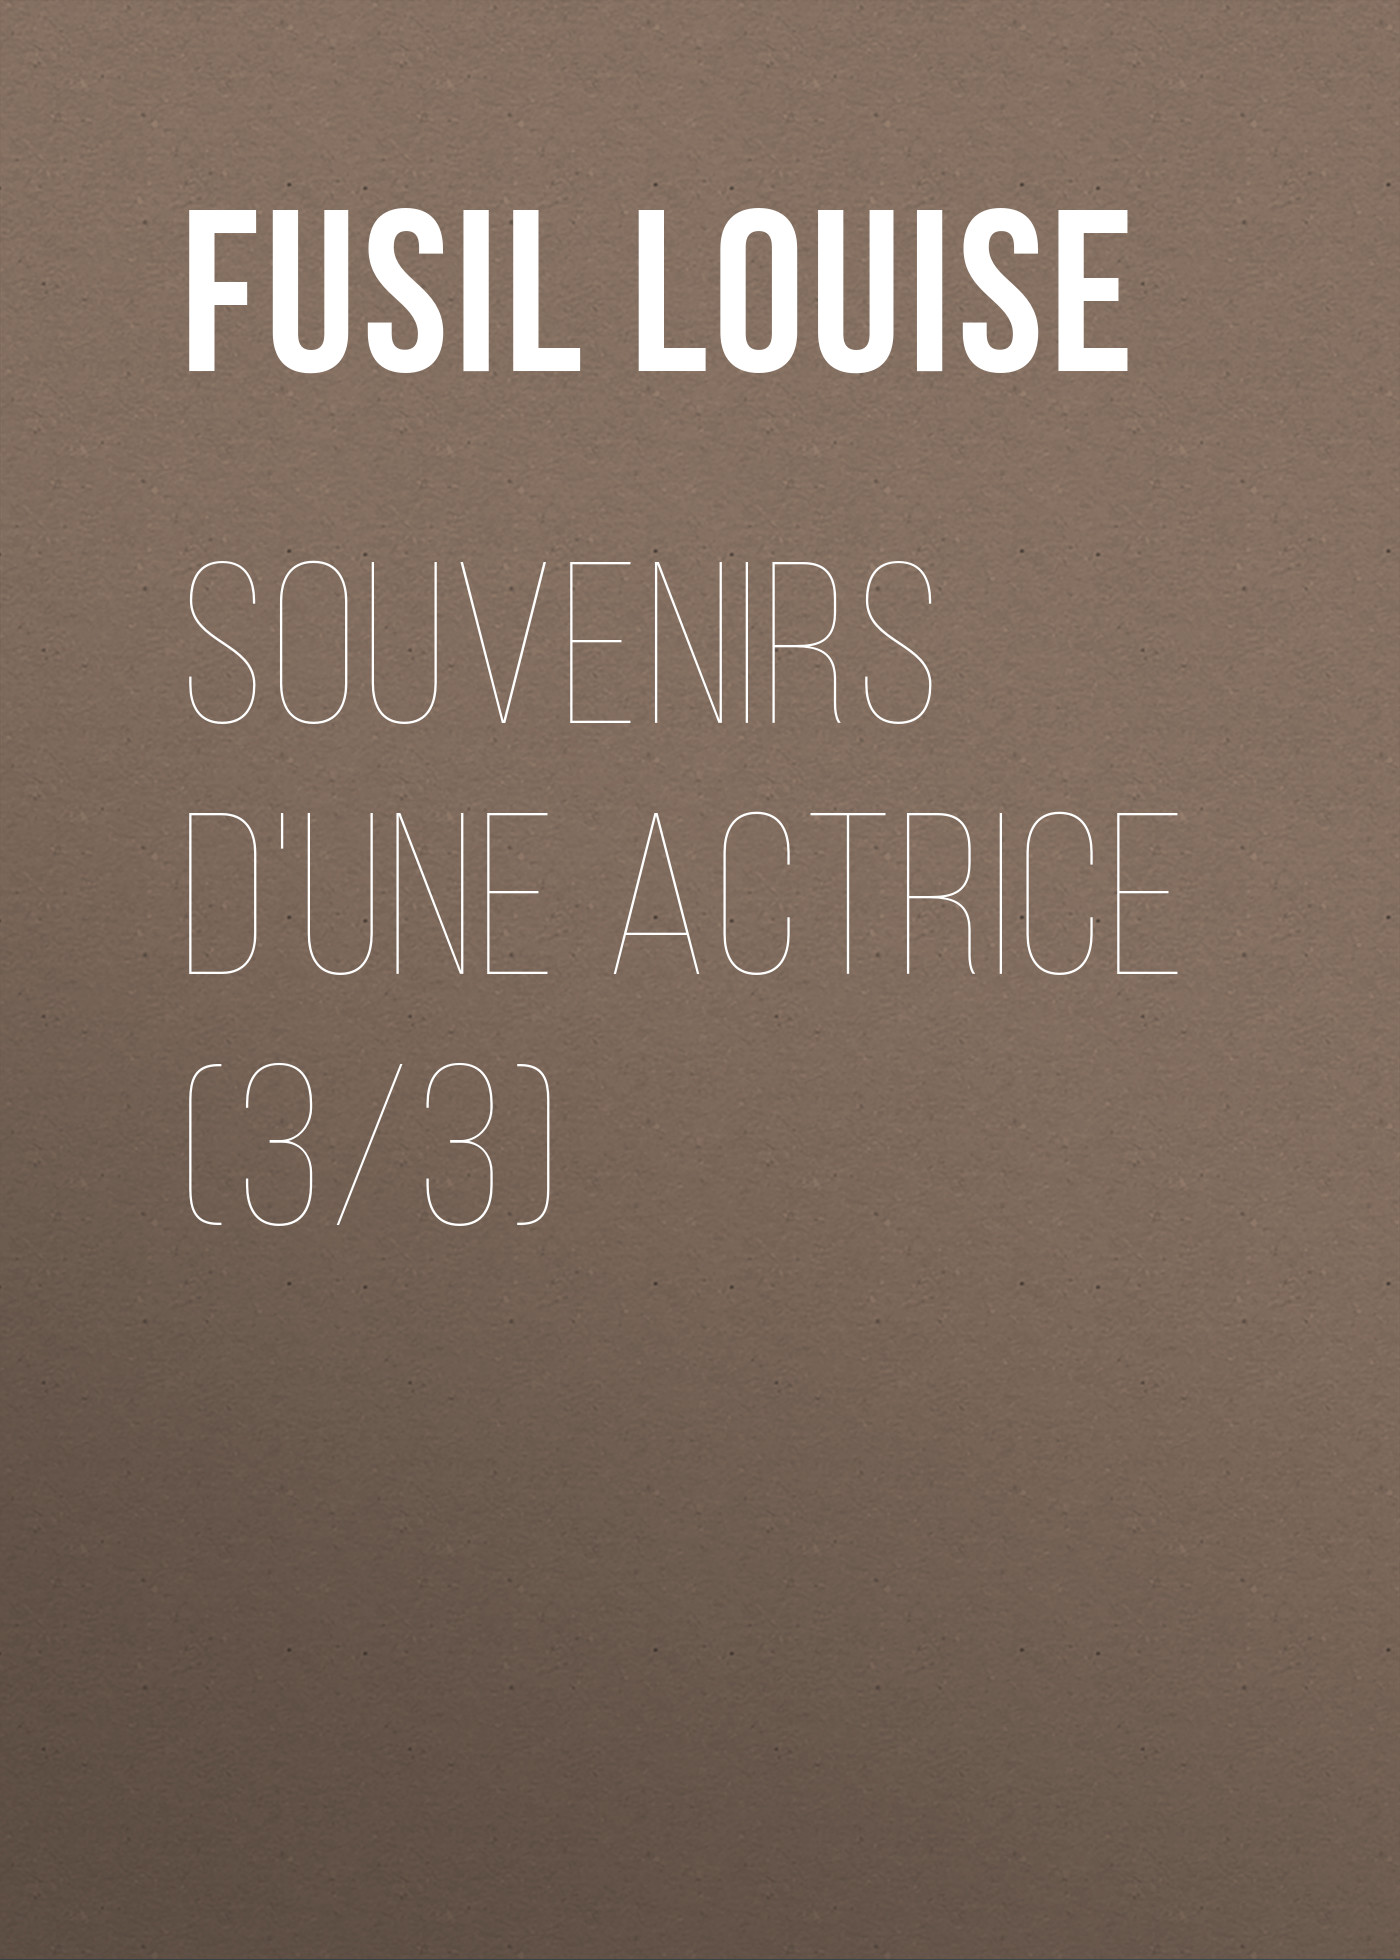 Книга Souvenirs d'une actrice (3/3) из серии , созданная Louise Fusil, может относится к жанру История, Зарубежная старинная литература, Зарубежная классика. Стоимость книги Souvenirs d'une actrice (3/3)  с идентификатором 24859819 составляет 0 руб.